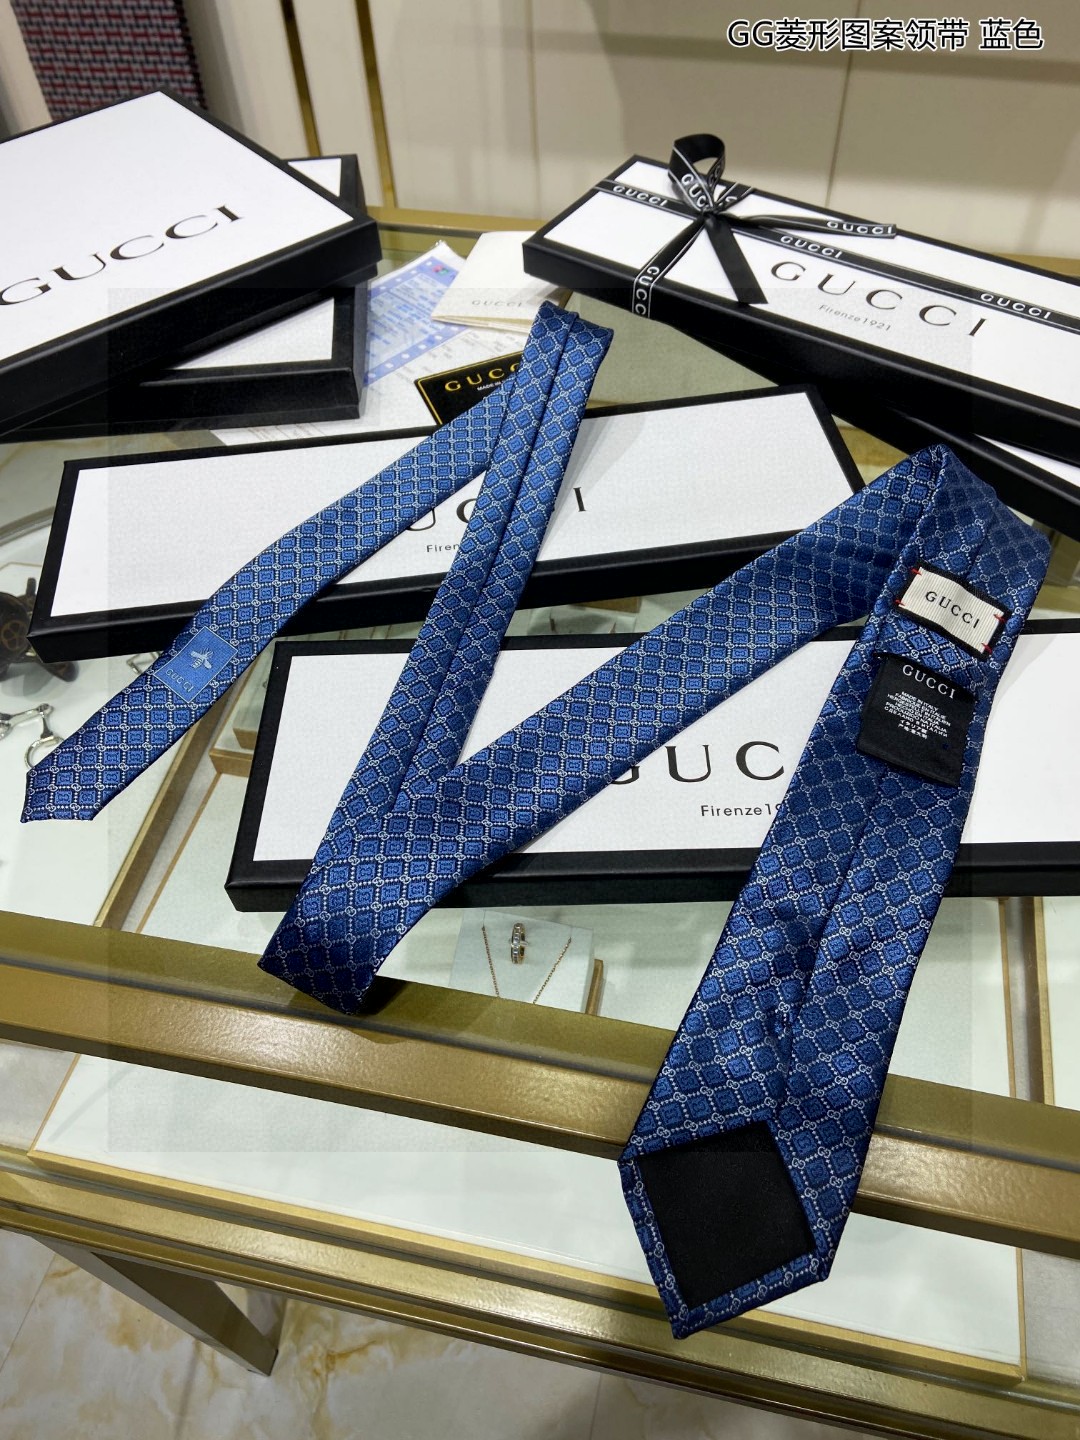 G家专柜新款GG菱形图案领带男士领带稀有采用经典小GLOGO提花展现精湛手工与时尚优雅的理想选择这款领带